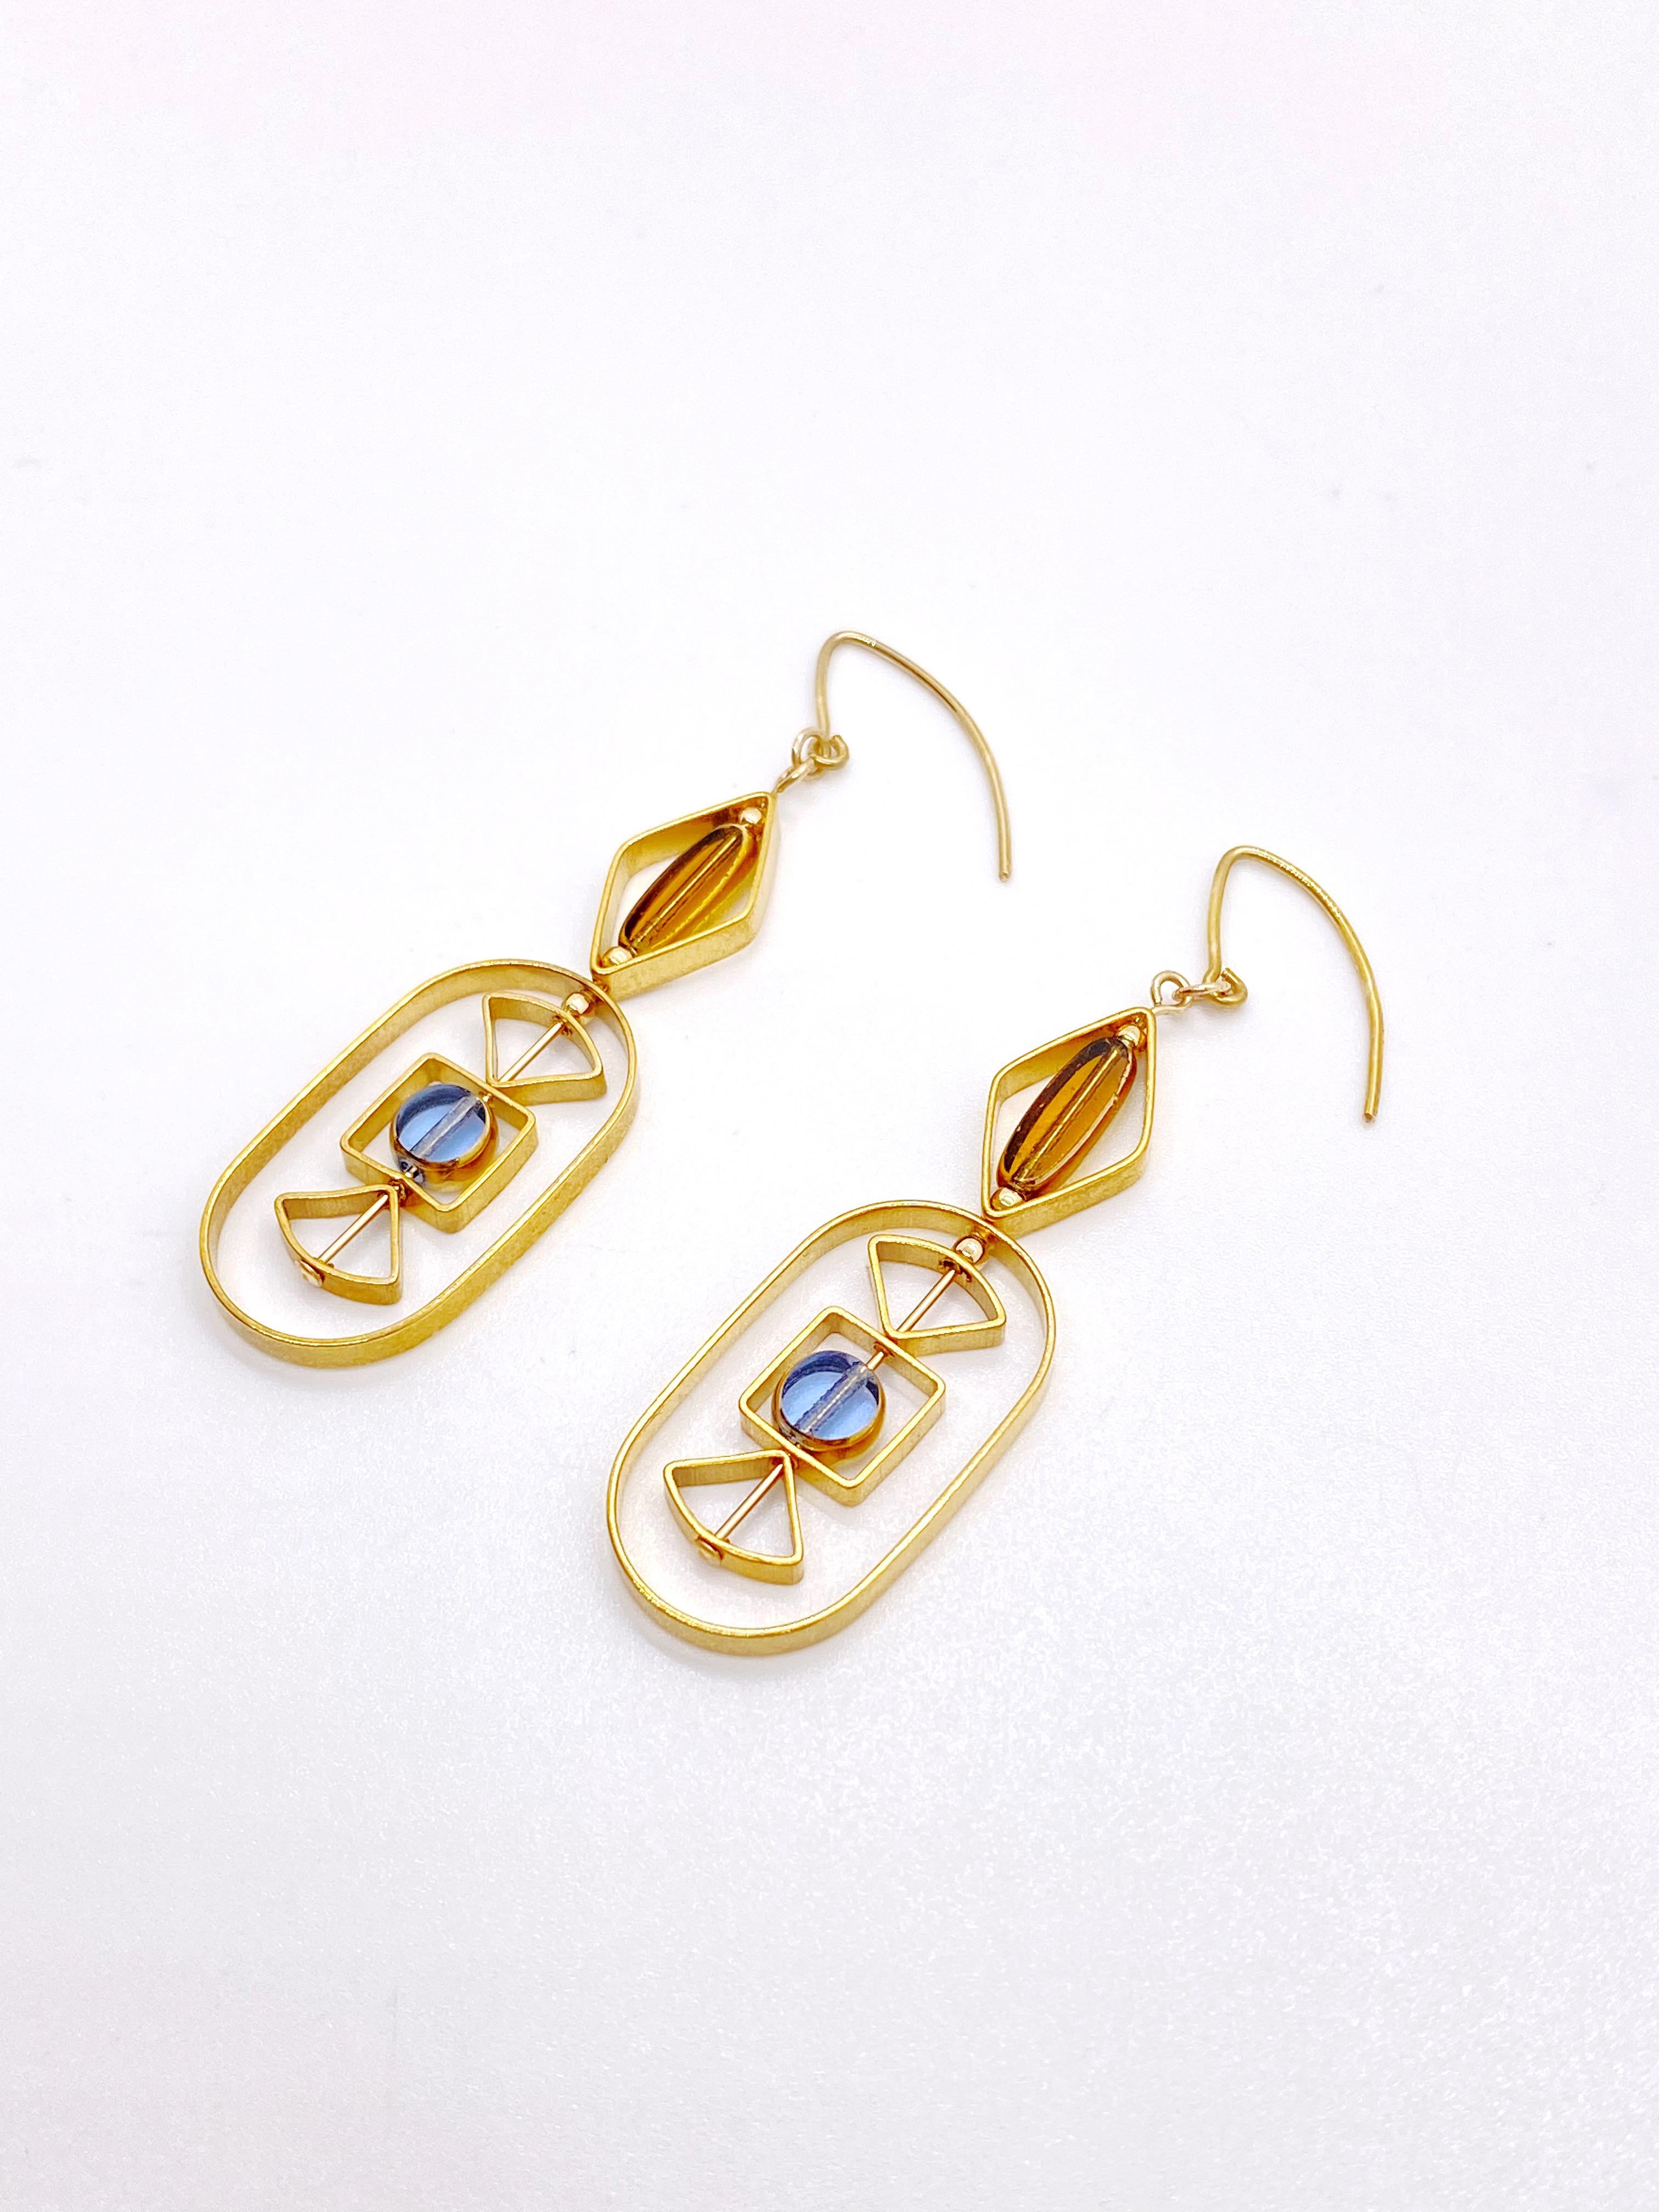 Dies ist für einen Satz Ohrringe. Die Ohrringe bestehen aus  1 blauer Minikreis und 1 länglicher transparenter Miniperlen. Es handelt sich um neue alte deutsche Glasperlen, die mit 24-karätigem Gold umrahmt sind. Die Perlen wurden in den 1920er bis